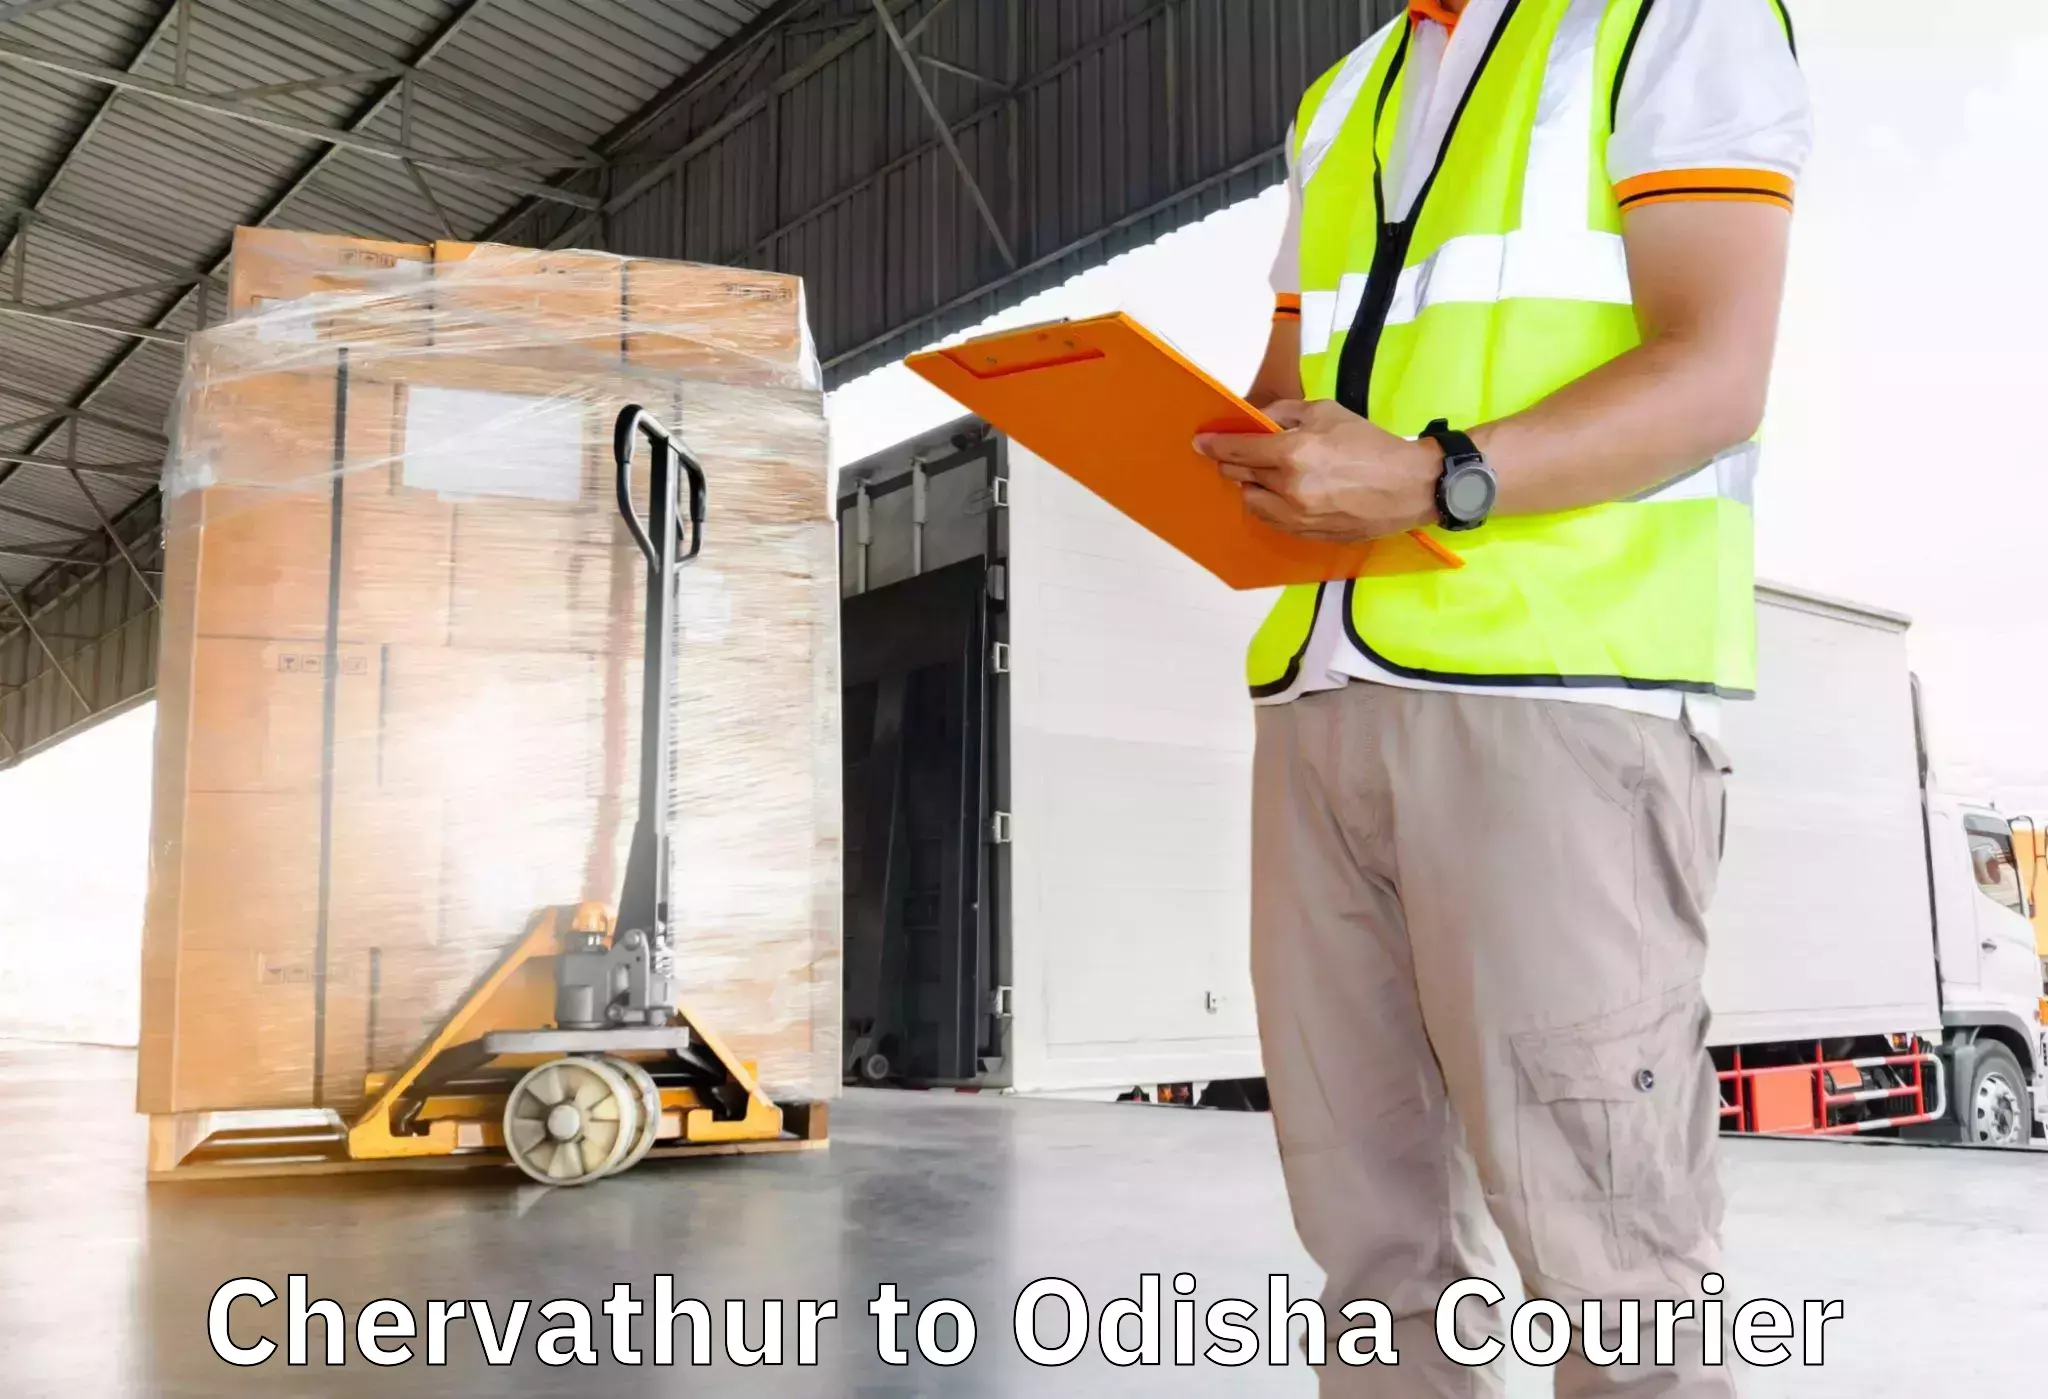 Household goods transport service Chervathur to Sambalpur